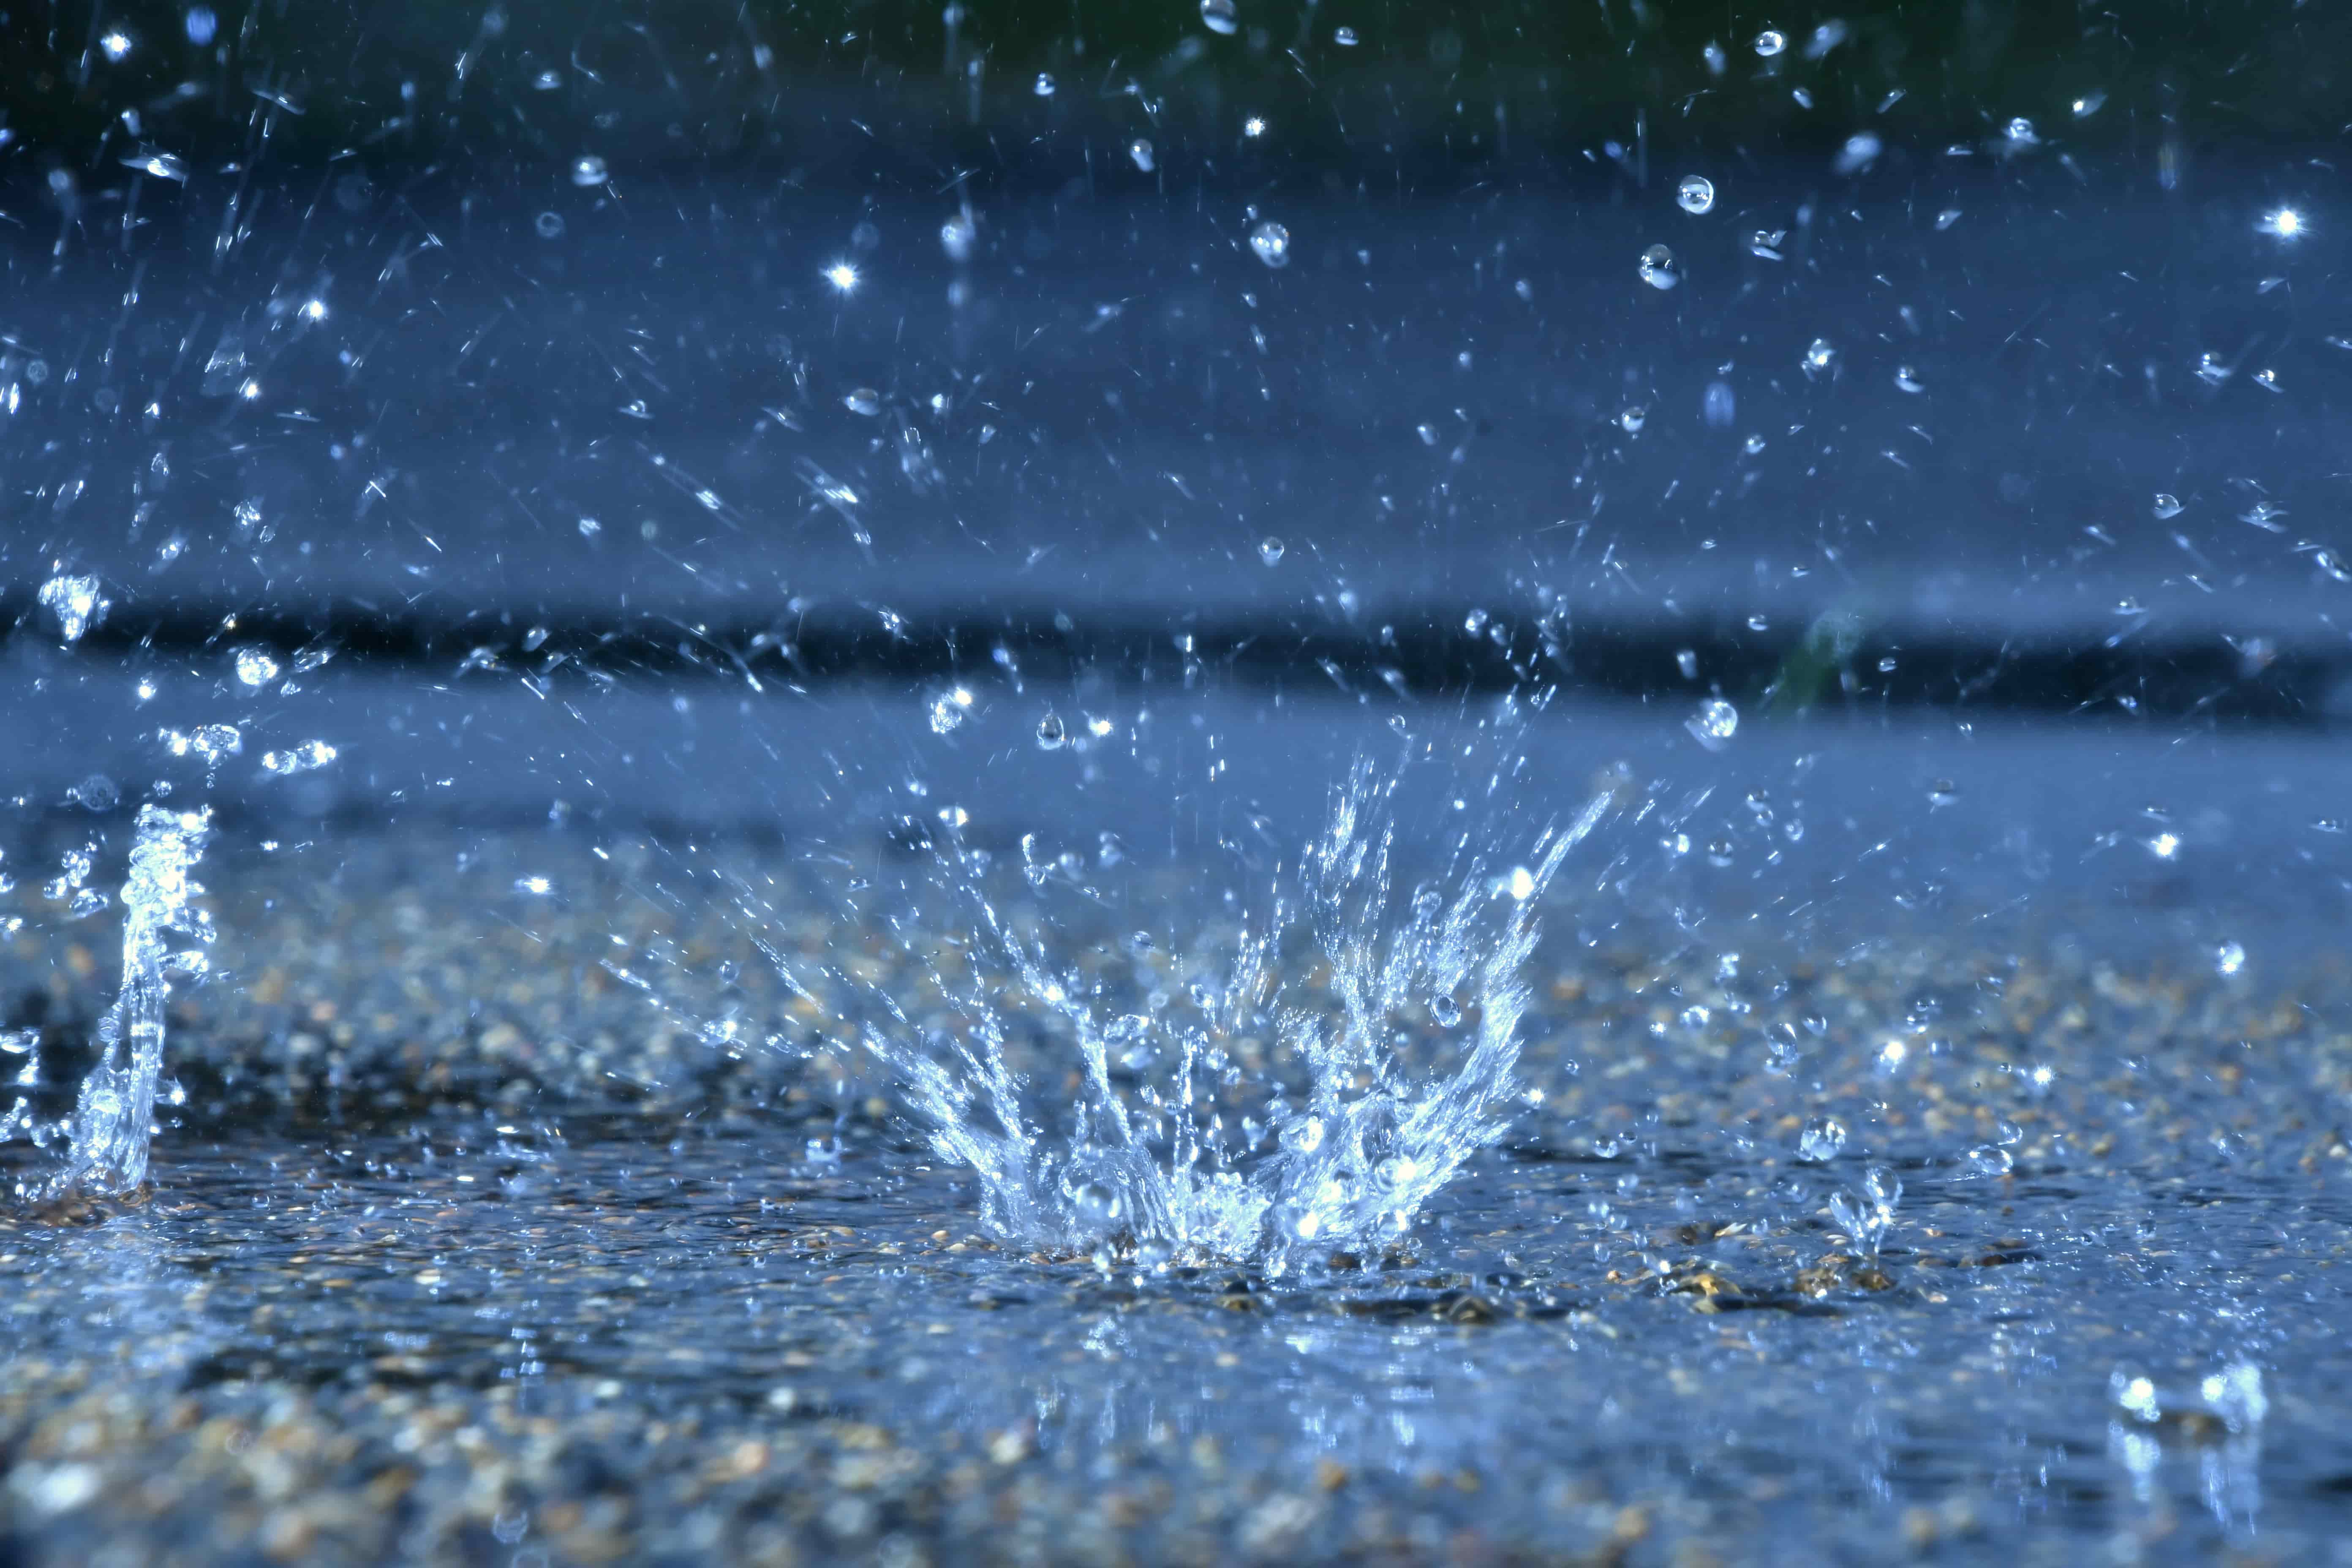 Regentropfen fallen auf Boden - Regenwassermanagement